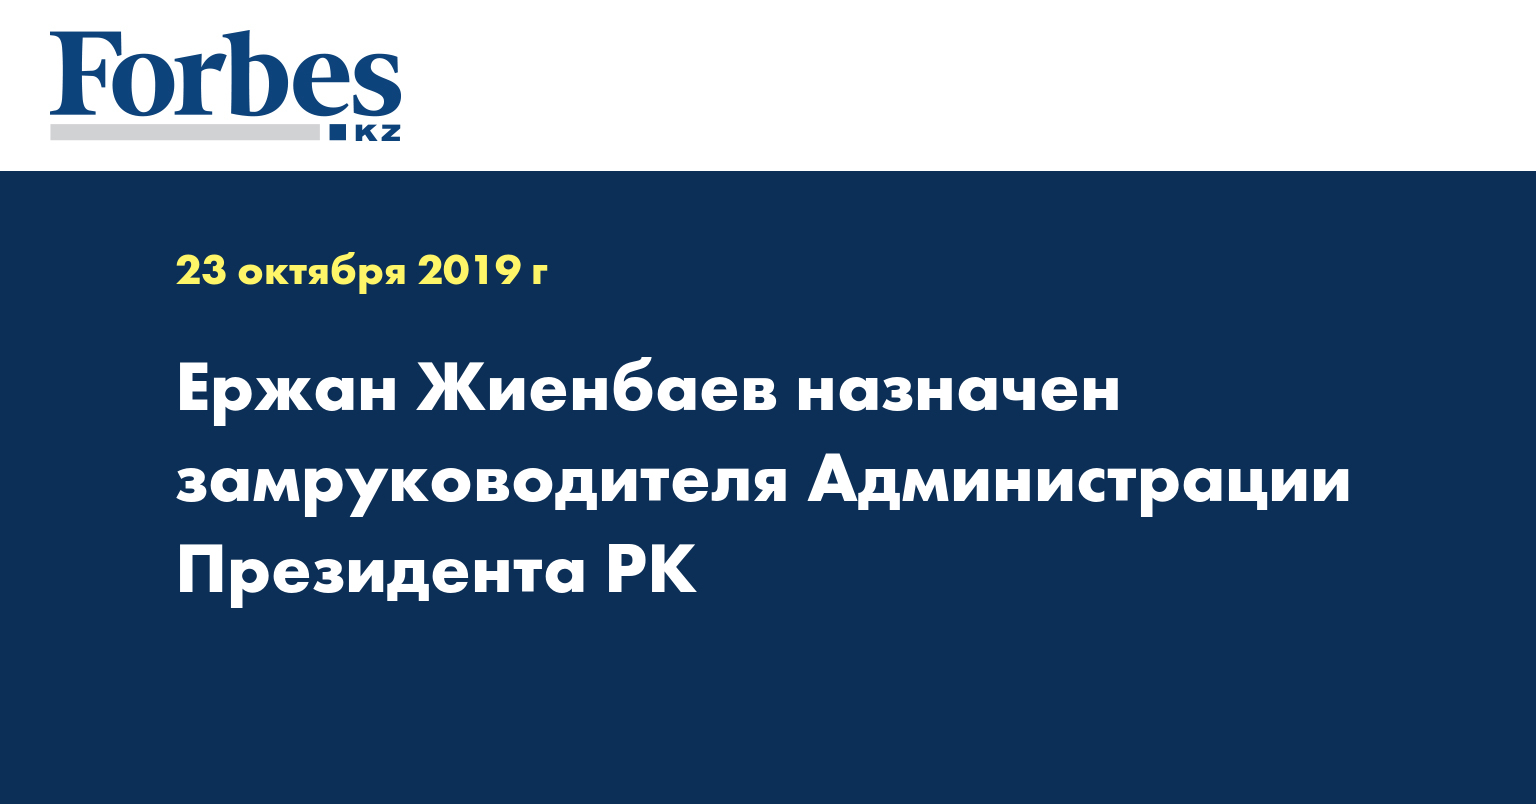 Ержан Жиенбаев назначен замруководителя Администрации Президента РК